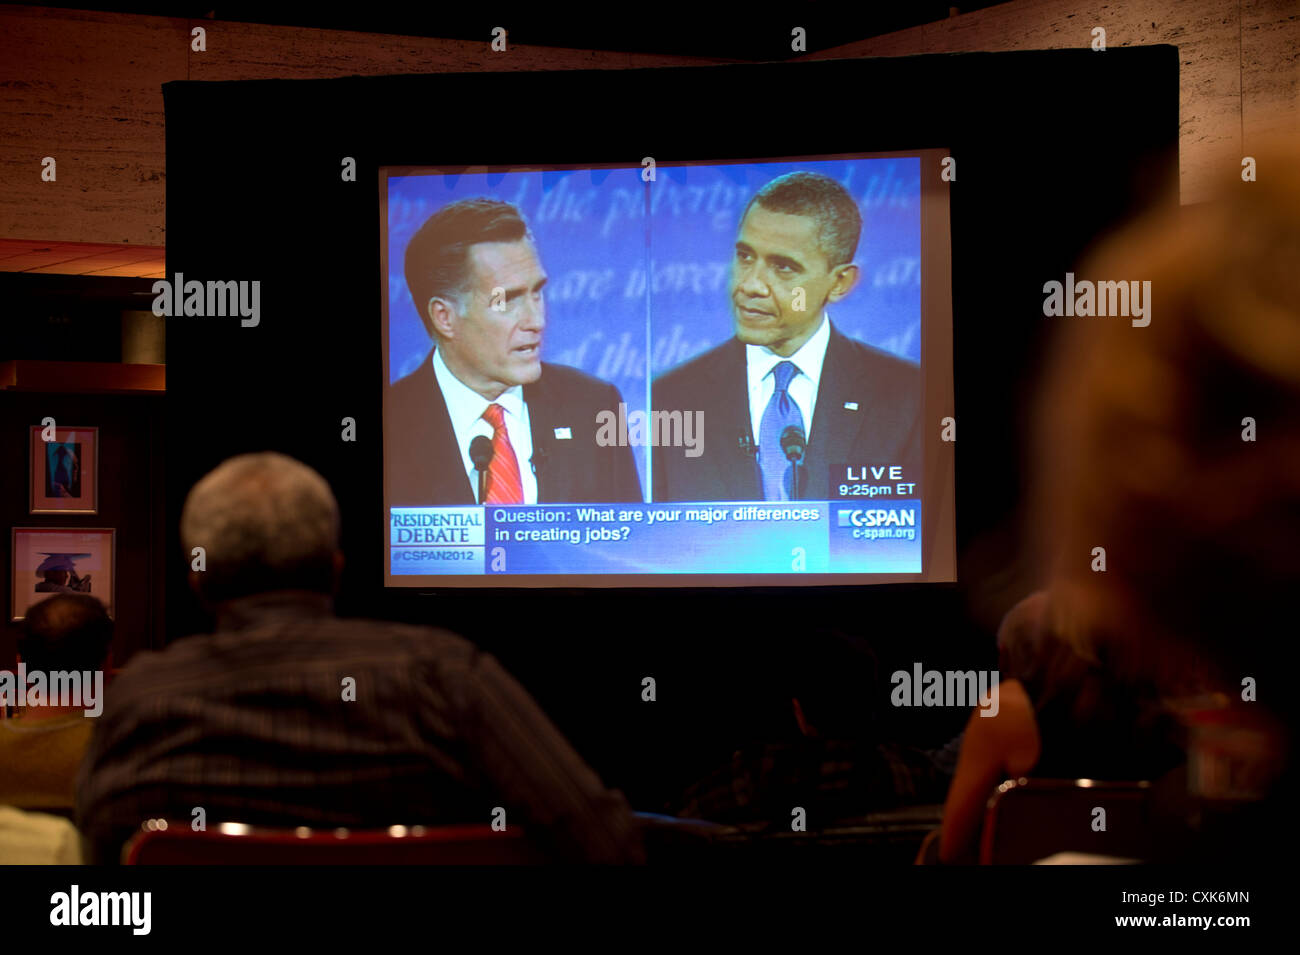 Wähler wahrscheinlich Uhr Großbild-TV zeigt Fernsehdebatte zwischen US-Präsidentschaftskandidaten Barack Obama und Mitt Romney Stockfoto